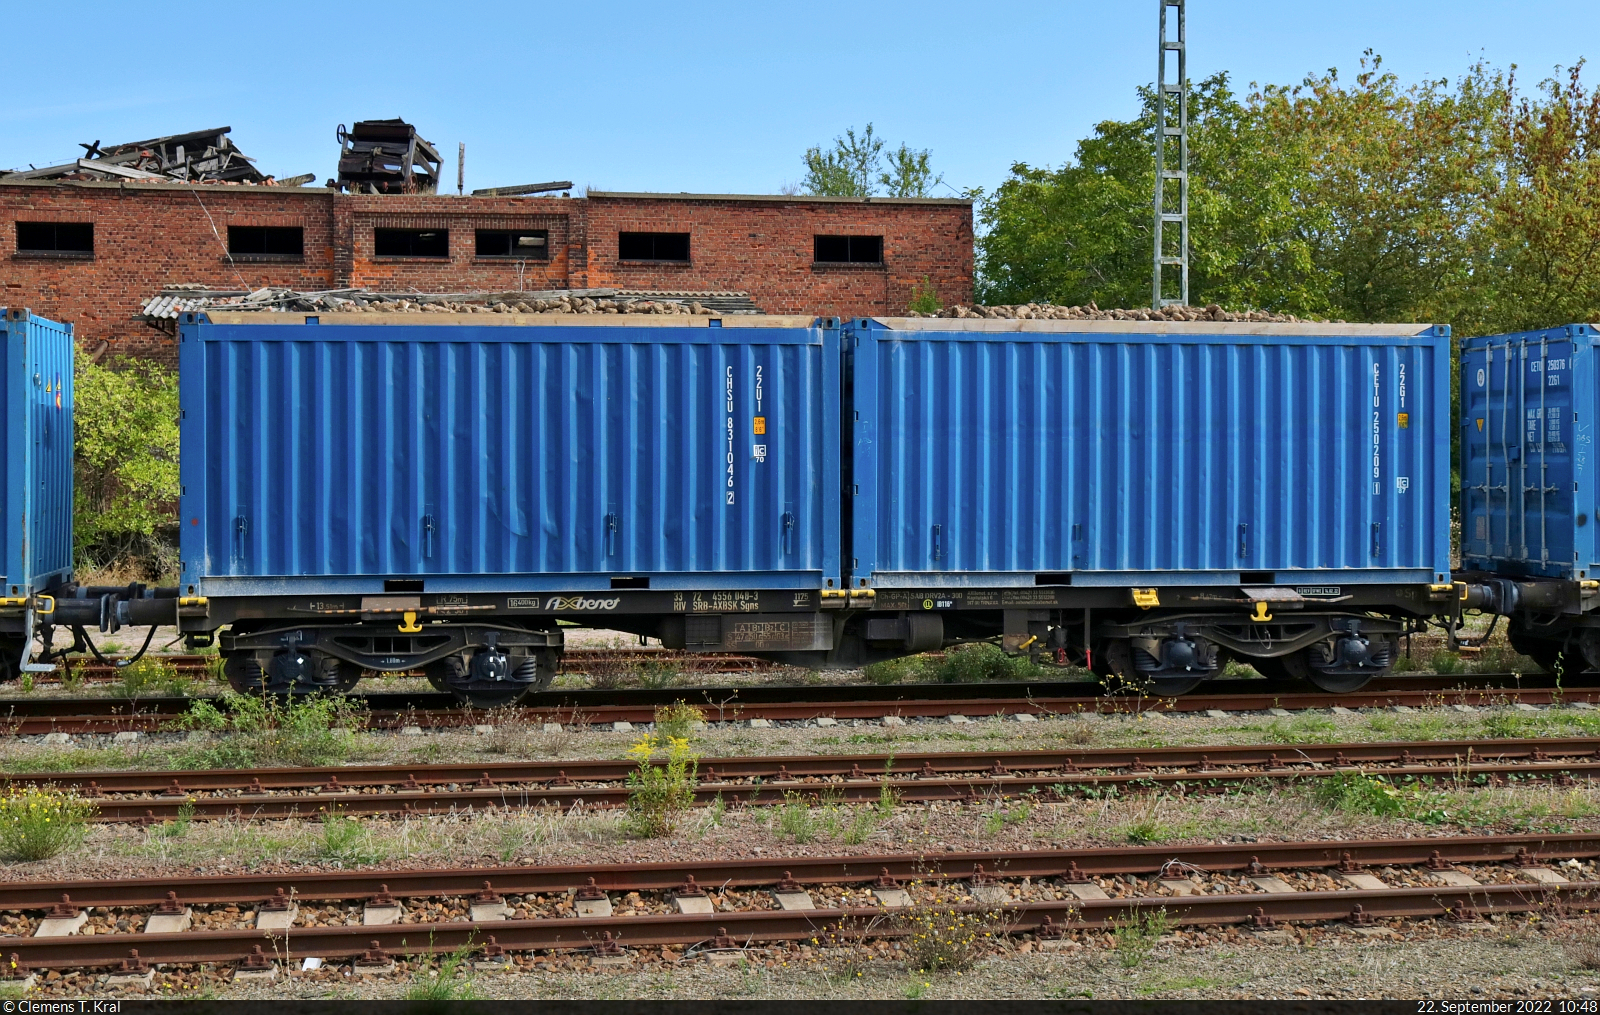 Rübenverkehr in Könnern
Ein in Serbien registrierter vierachsiger Containertragwagen mit der Bezeichnung  Sgns  (33 72 4556 048-3 SRB-AXBSK) ist ebenfalls mit im Verband eines Zuckerrüben-Zuges im Bahnhof Könnern. Die Rüben gelangen zur Weiterverarbeitung in die hier ansässige Zuckerfabrik. Dafür werden die Container auf LKW umgeschlagen.
Das Bild entstand vom Bahnsteig 2/3.

🧰 AXBenet s.r.o.
🕓 22.9.2022 | 10:48 Uhr